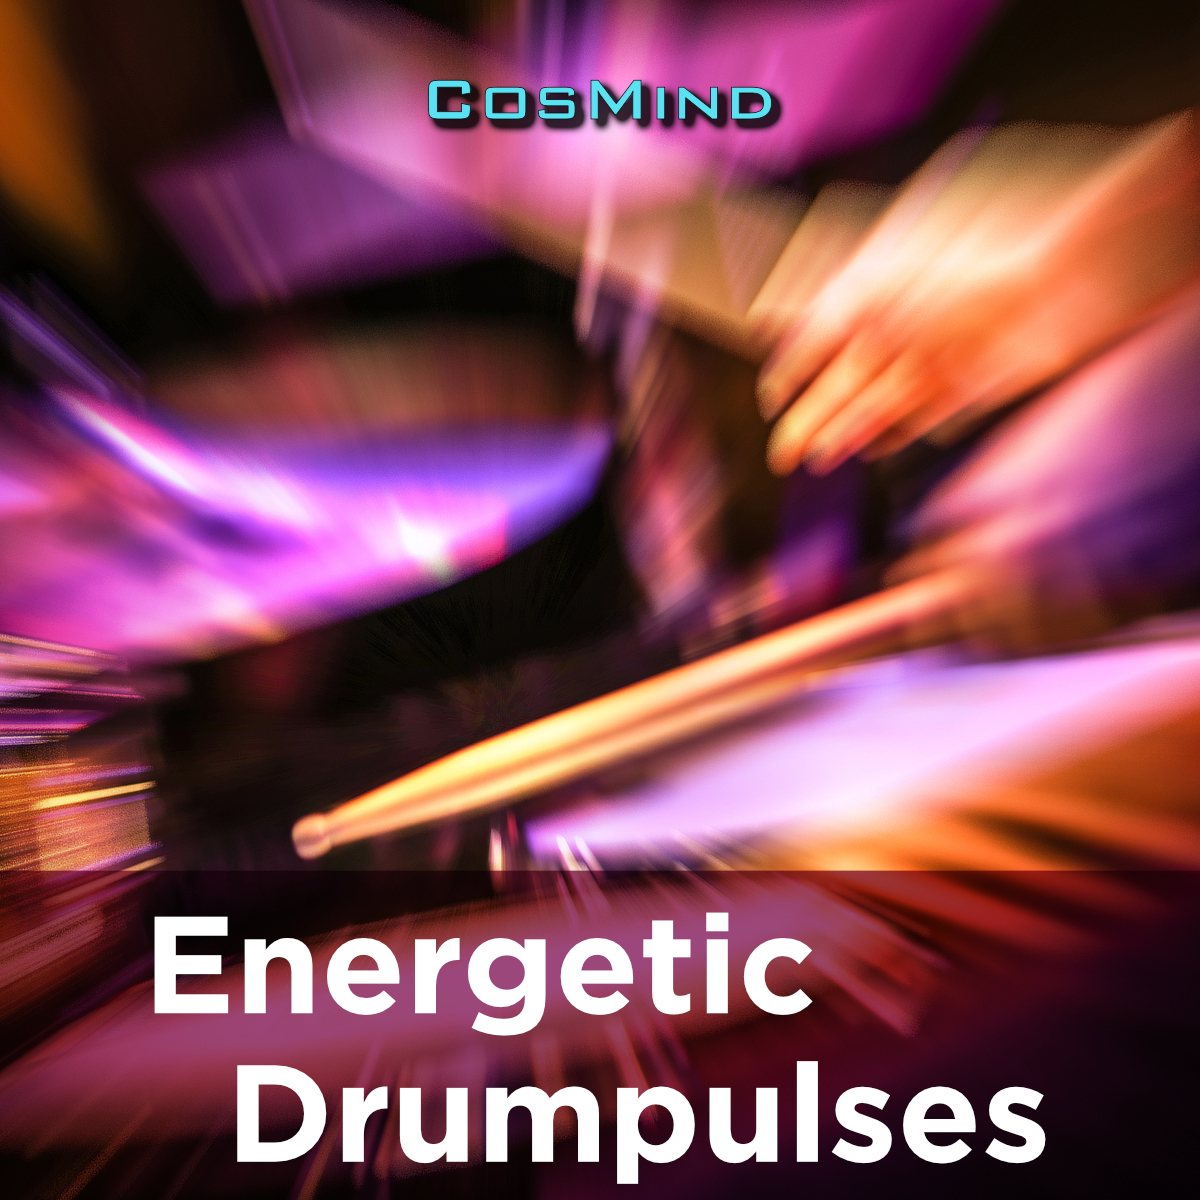 Energetic Drumpulses